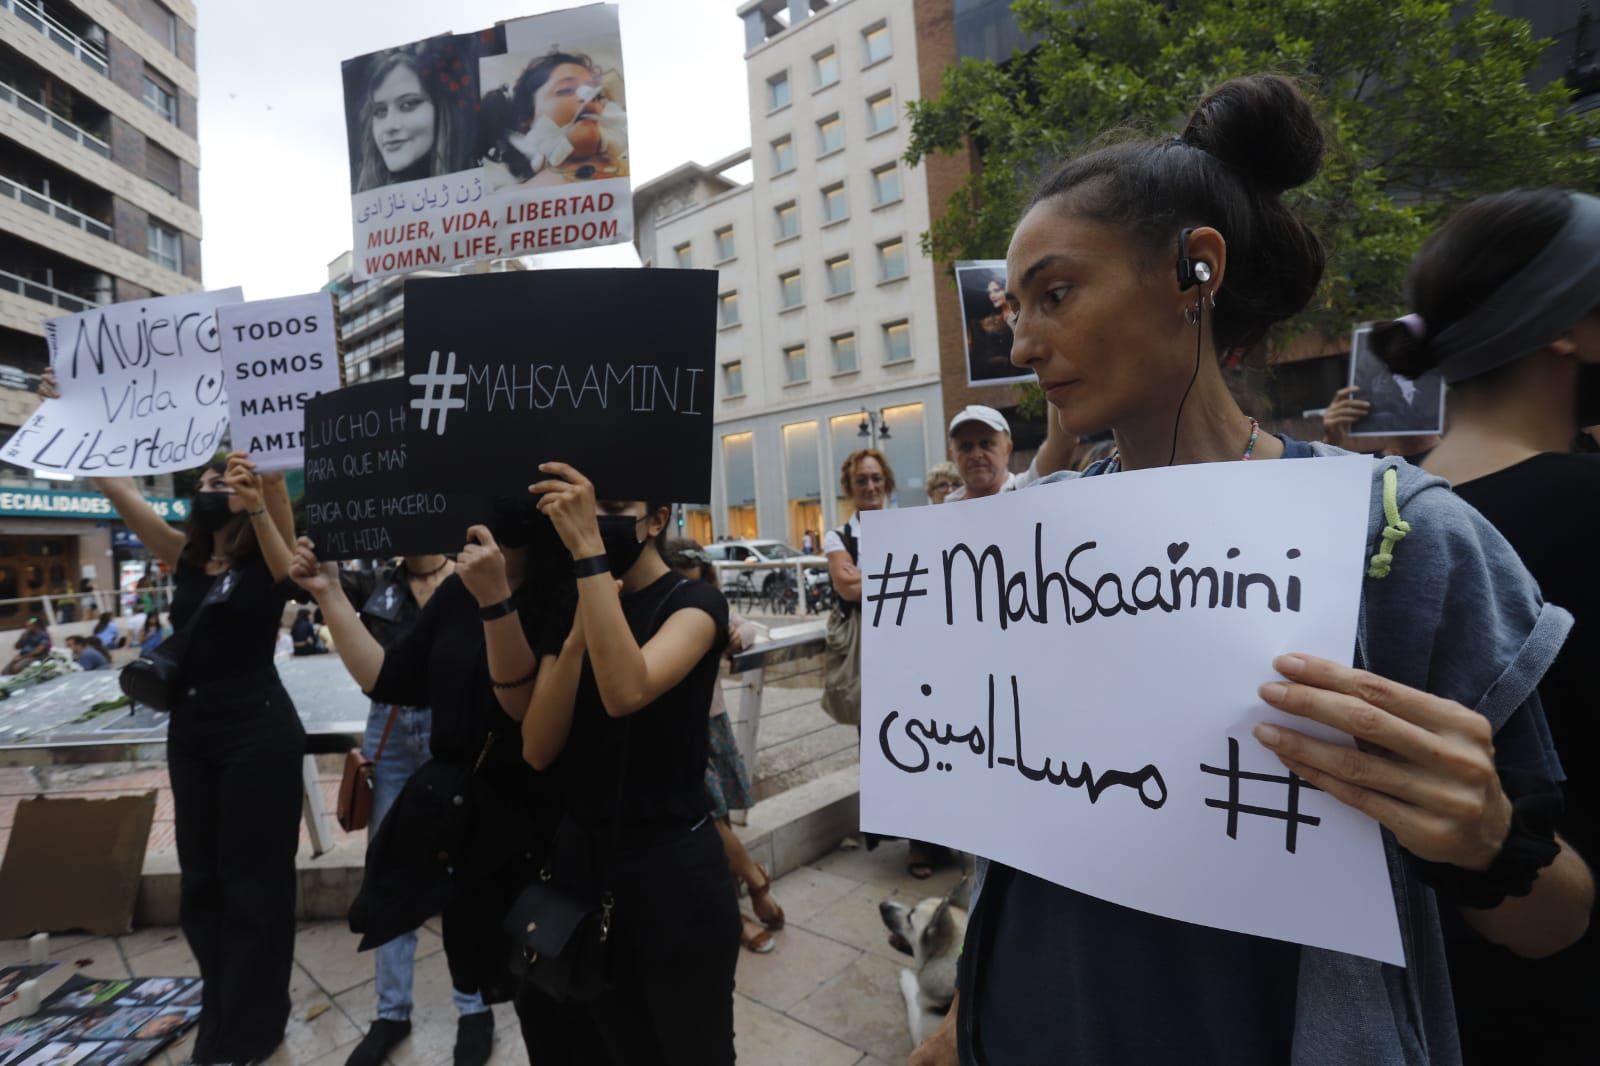 Concentración en València contra el asesinato de Masha Amini.